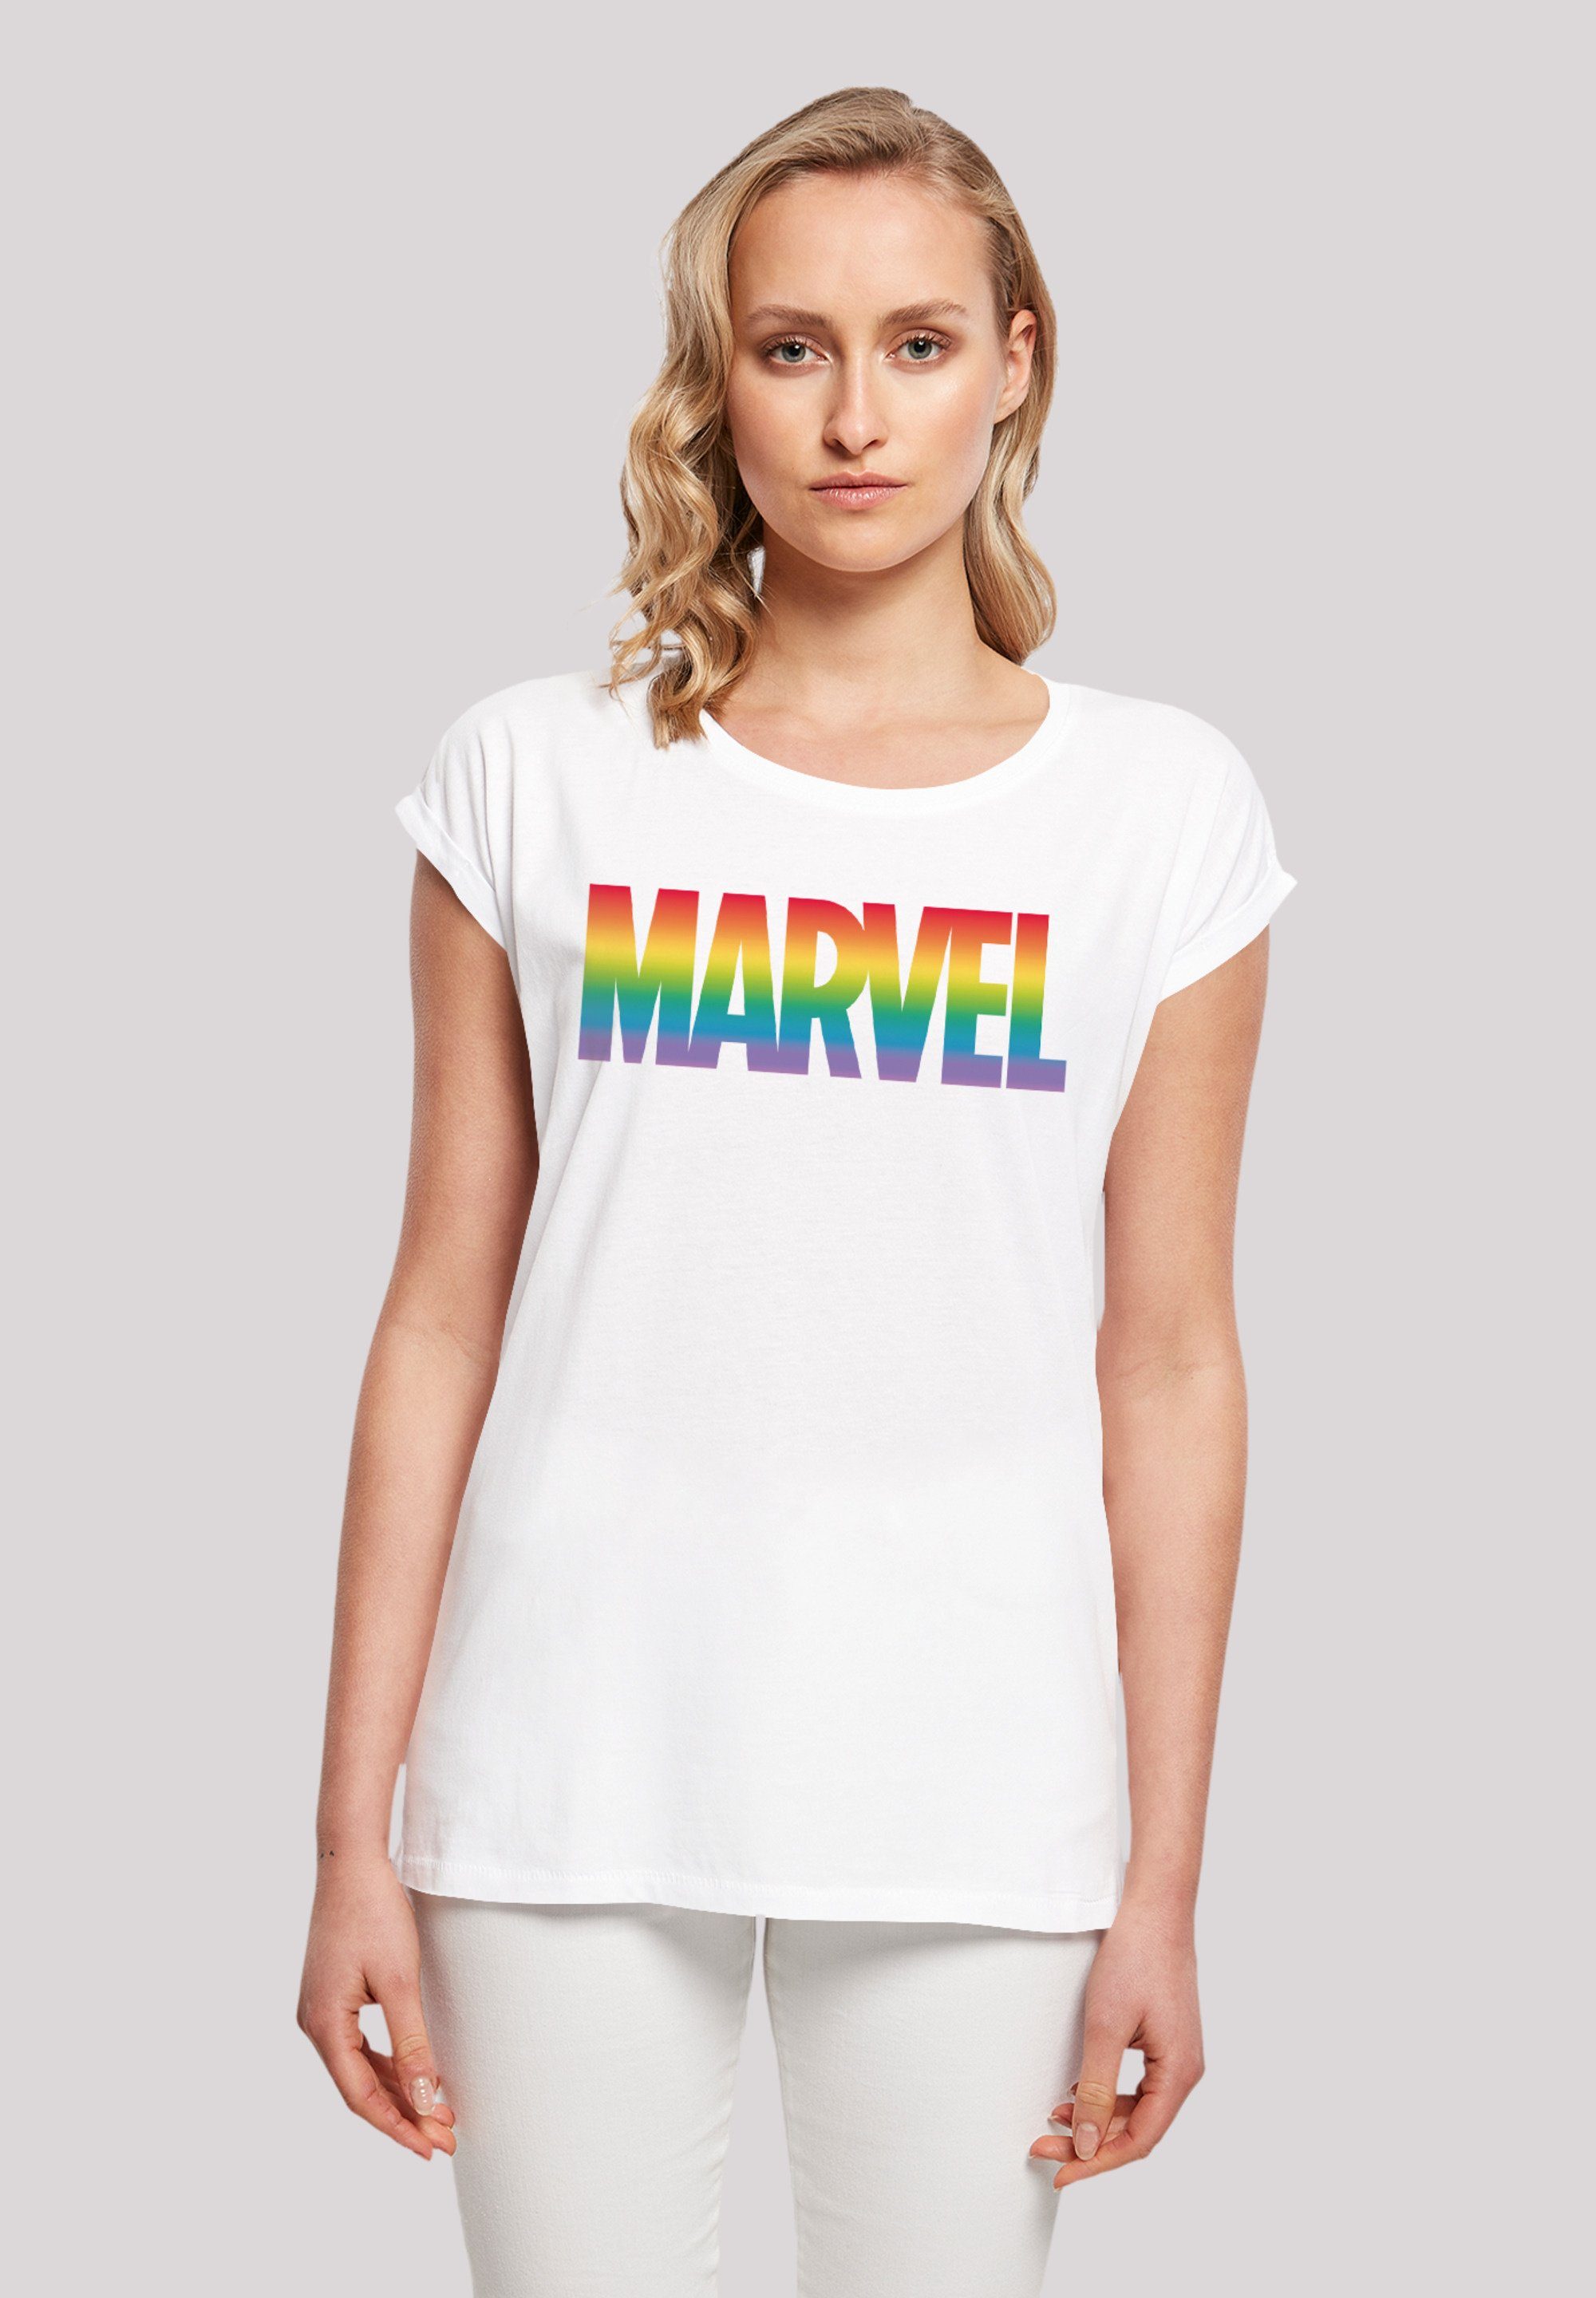 F4NT4STIC T-Shirt Marvel Pride Premium Qualität, Sehr weicher Baumwollstoff  mit hohem Tragekomfort